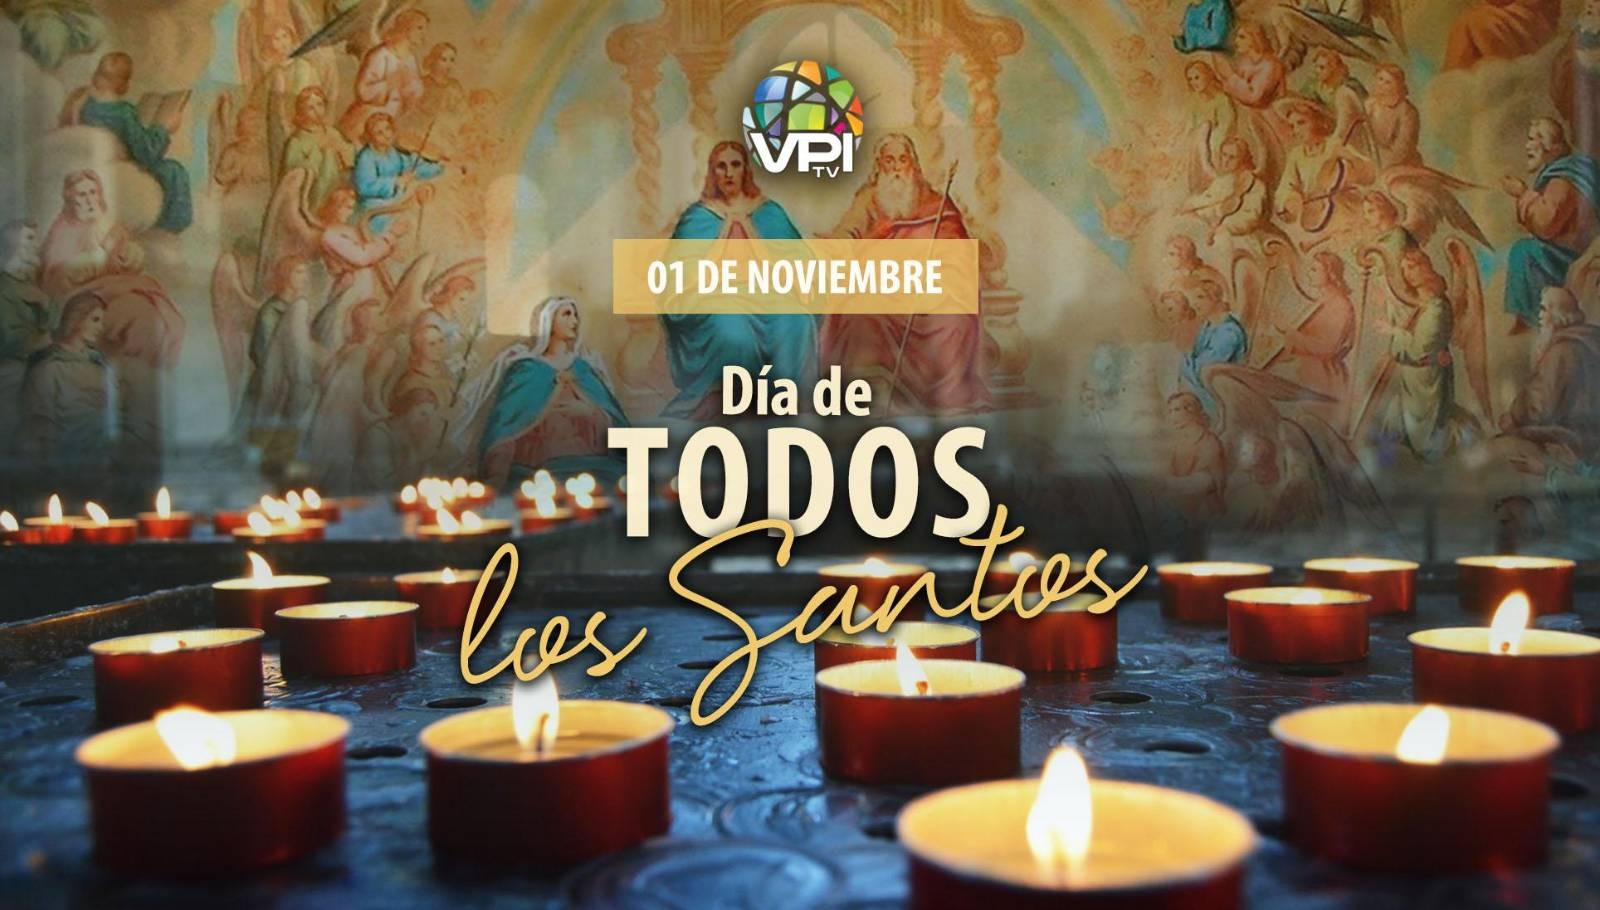 Día de todos los Santos - VPItv